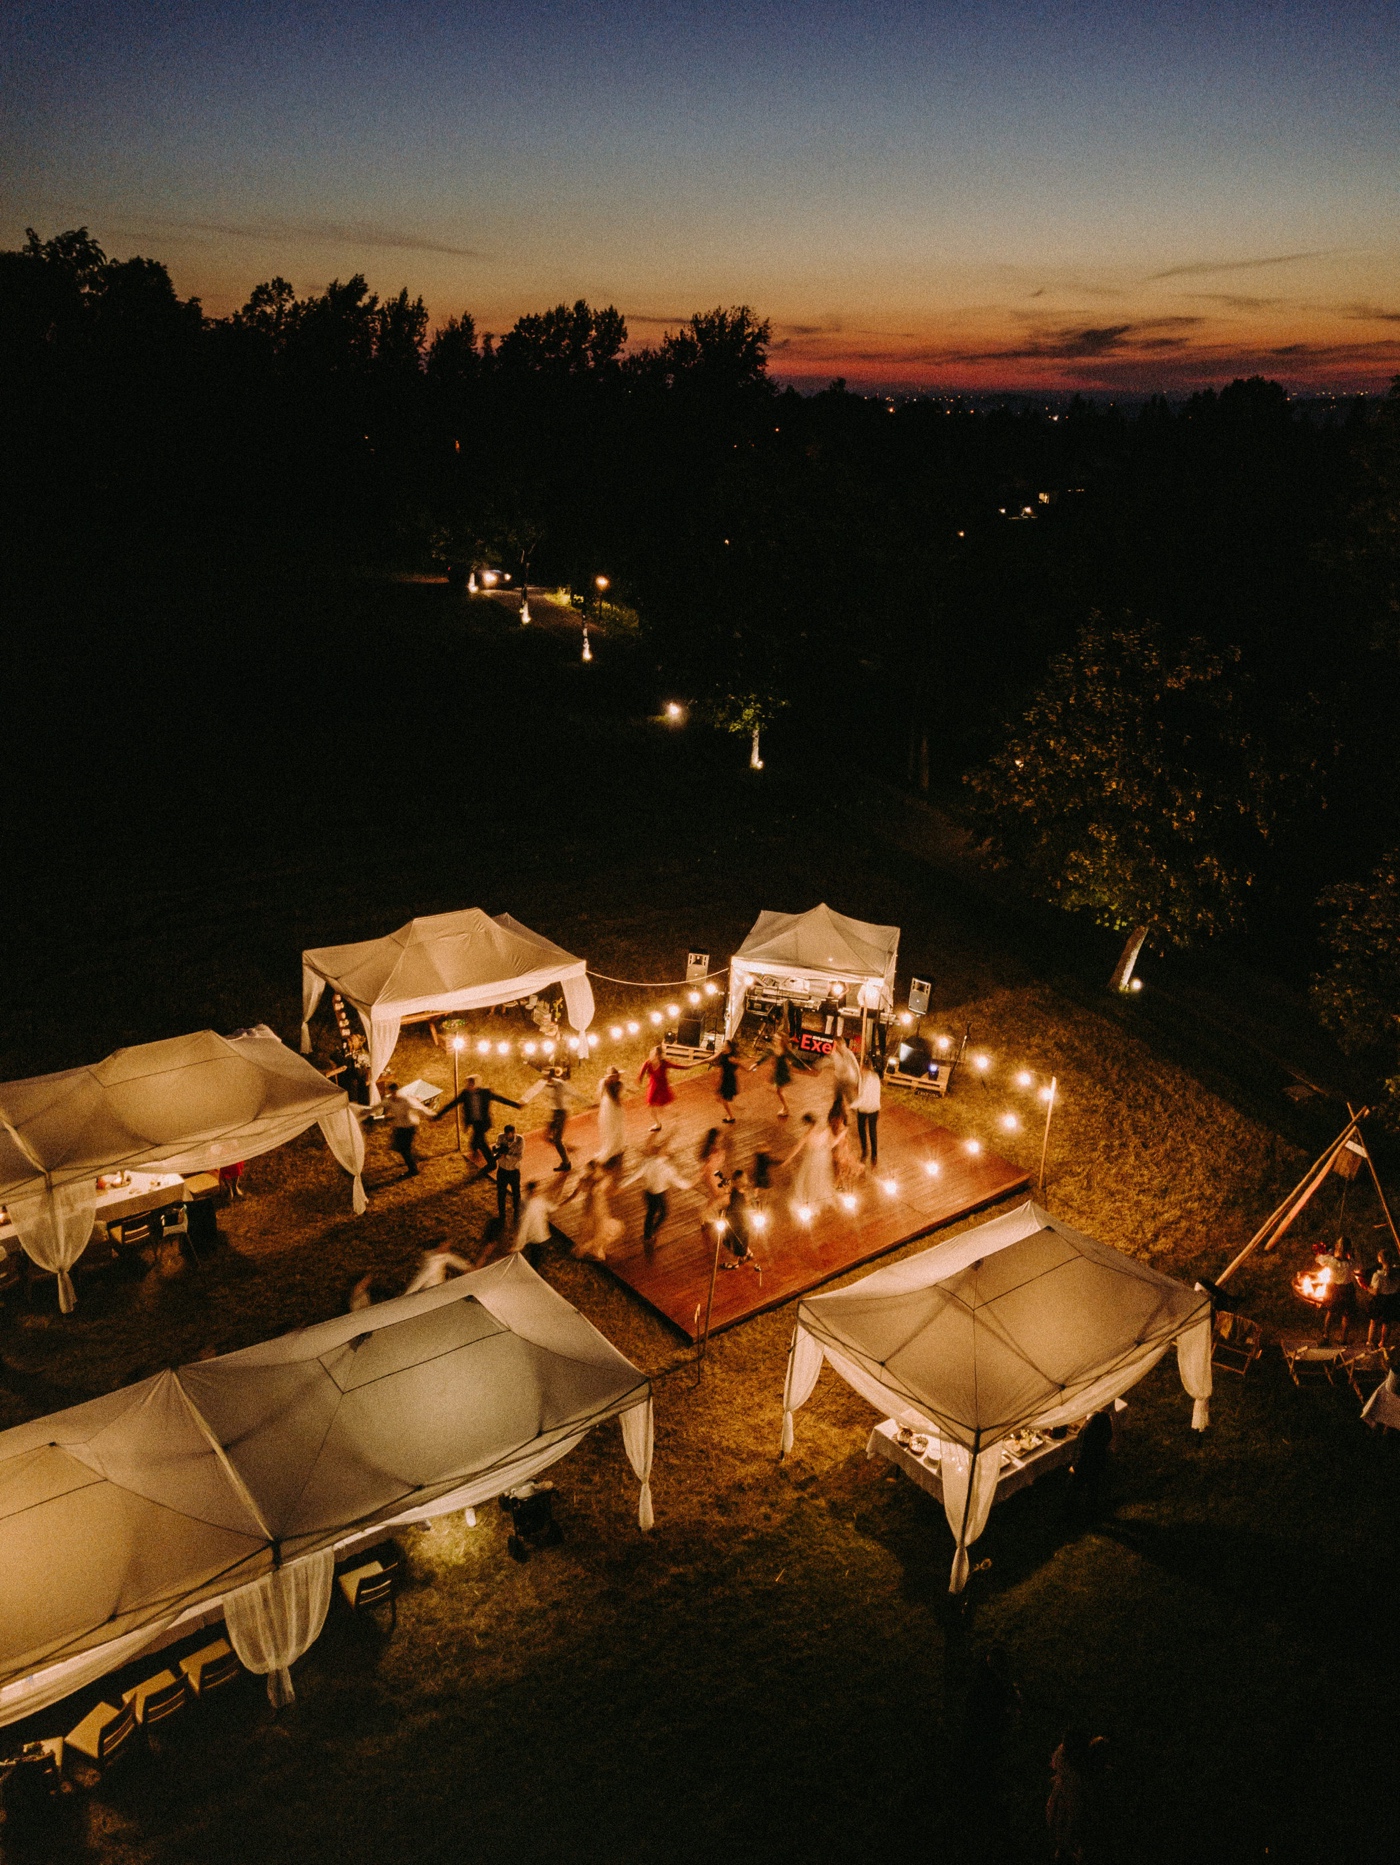 wesele pod namiotami w górach nałęże jaworze gościniec szumny dron w nocy światełka